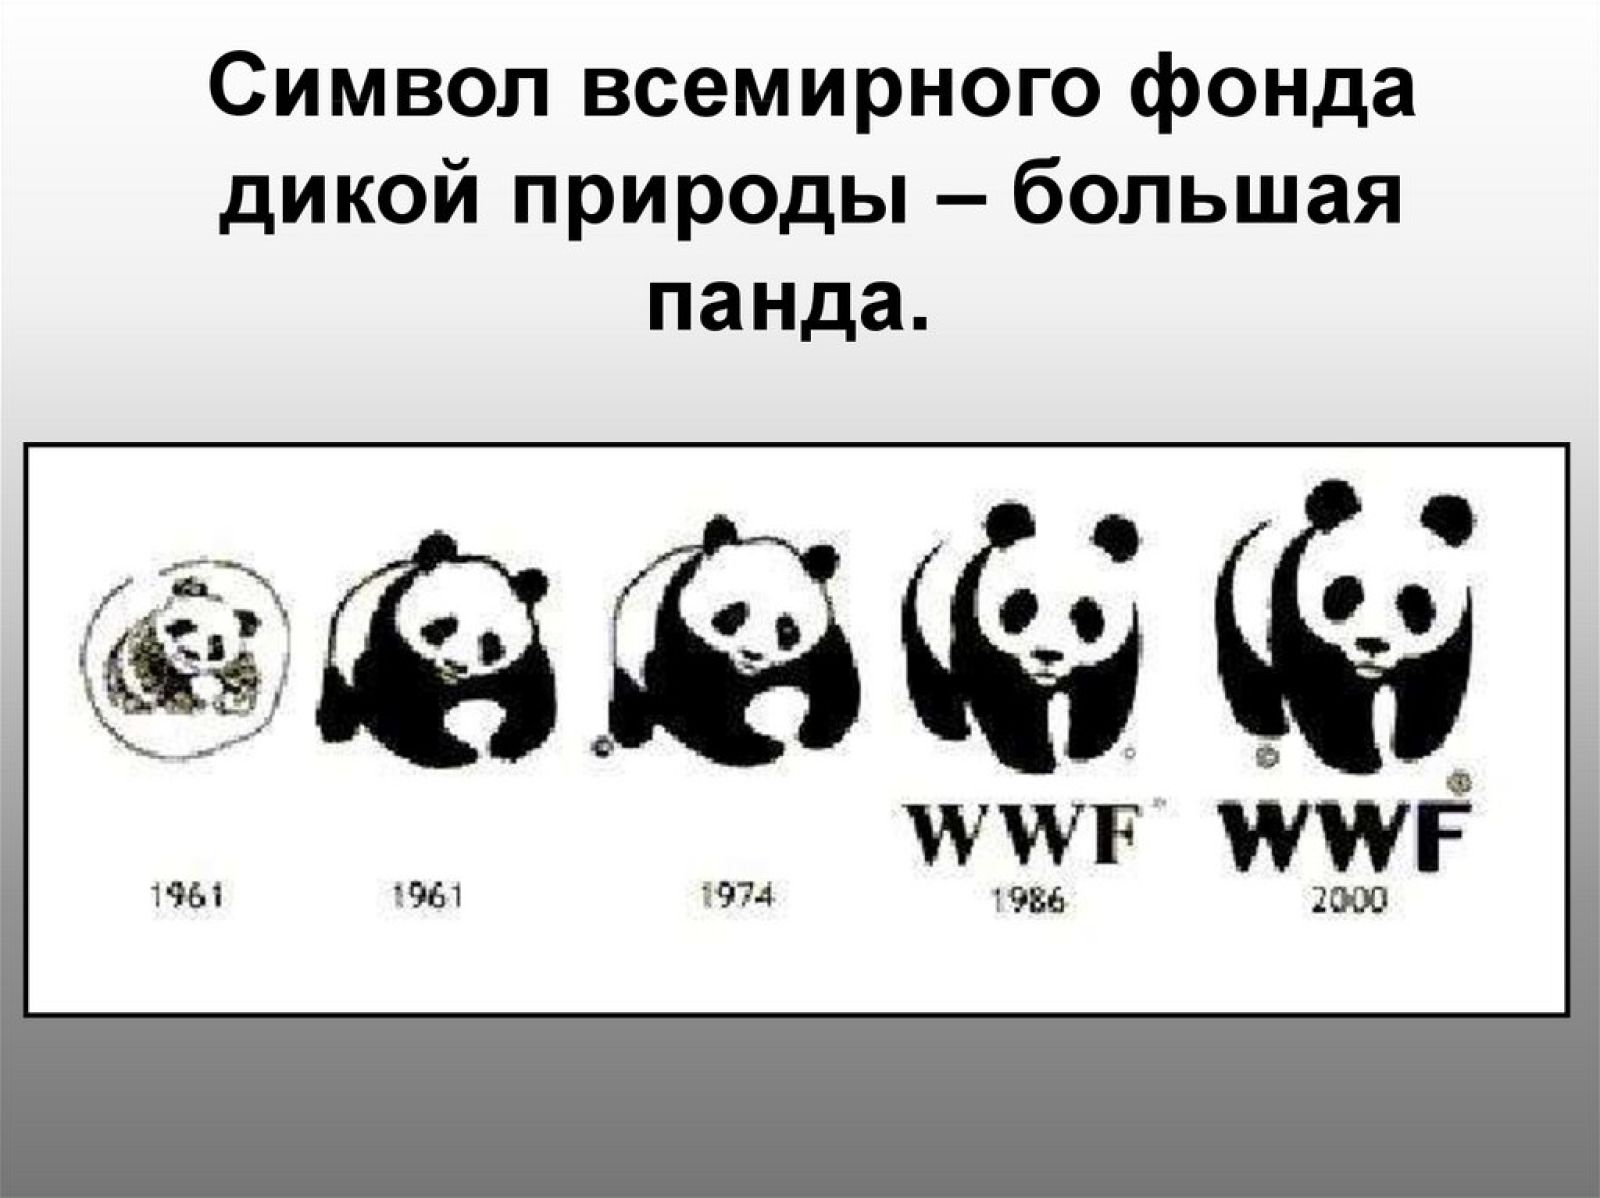 The world wildlife fund is. Фонд дикой природы WWF В России. Панда Всемирный фонд дикой природы. Всемирный фонд дикой природы эмблема. Большая Панда символ Всемирного фонда дикой природы.